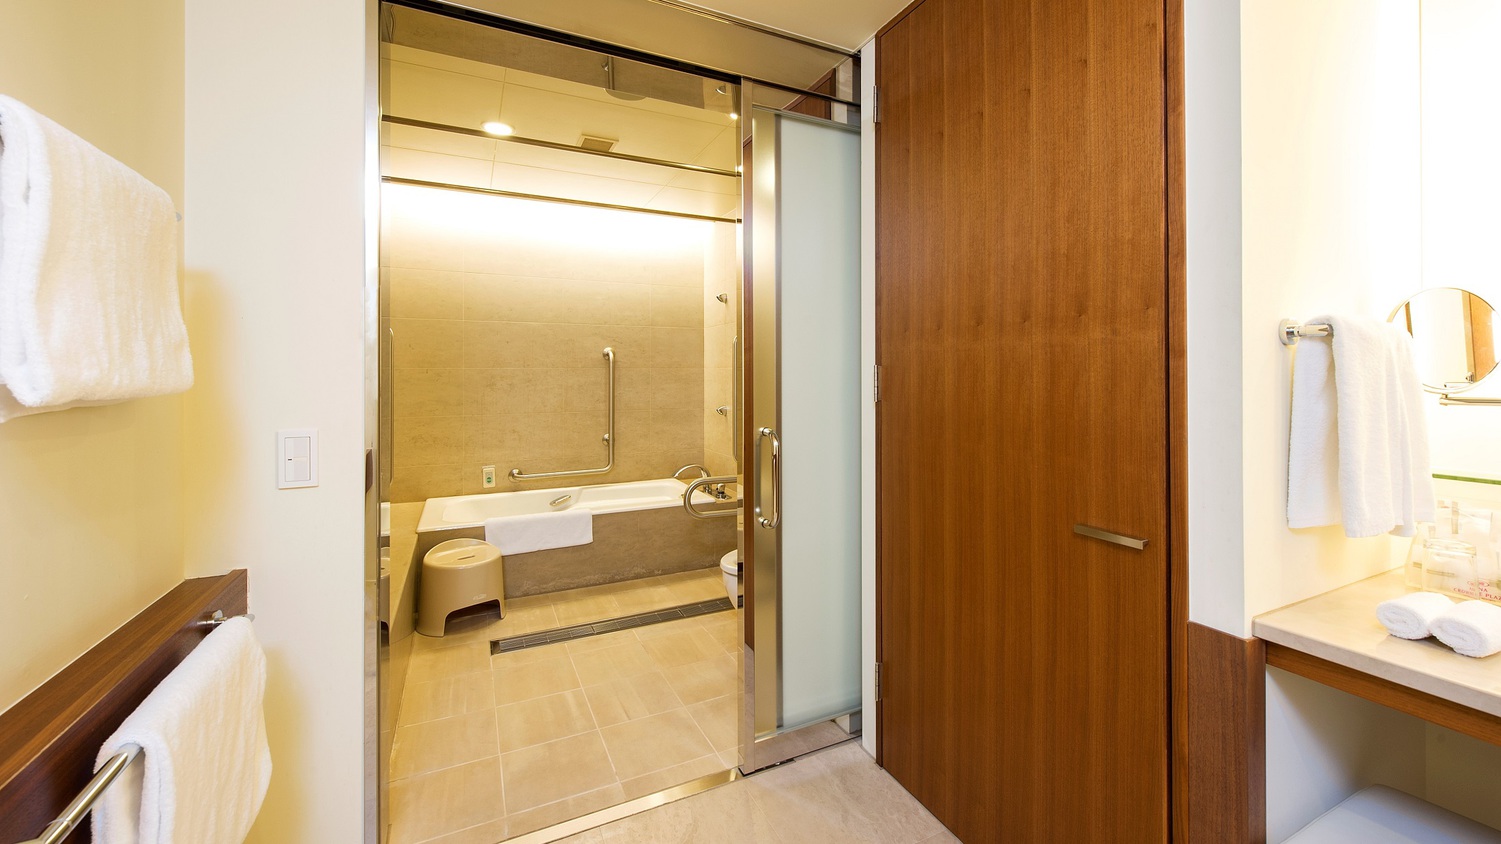 広いスペースを確保した浴室は、車椅子のままご利用可能。バリアフリー対応のお部屋も広々快適です。